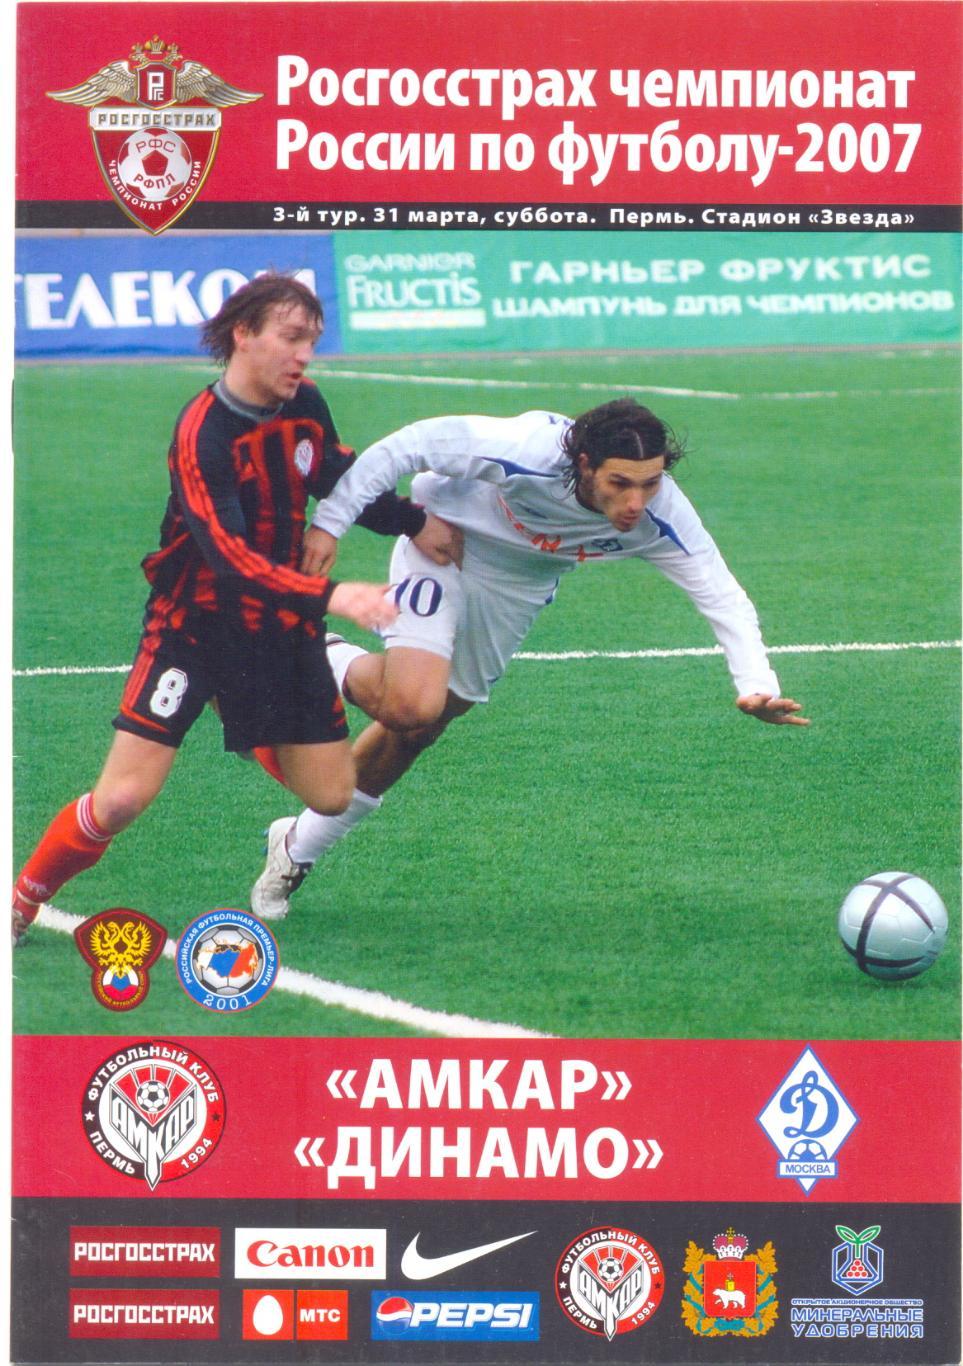 Амкар - Динамо Москва 2007